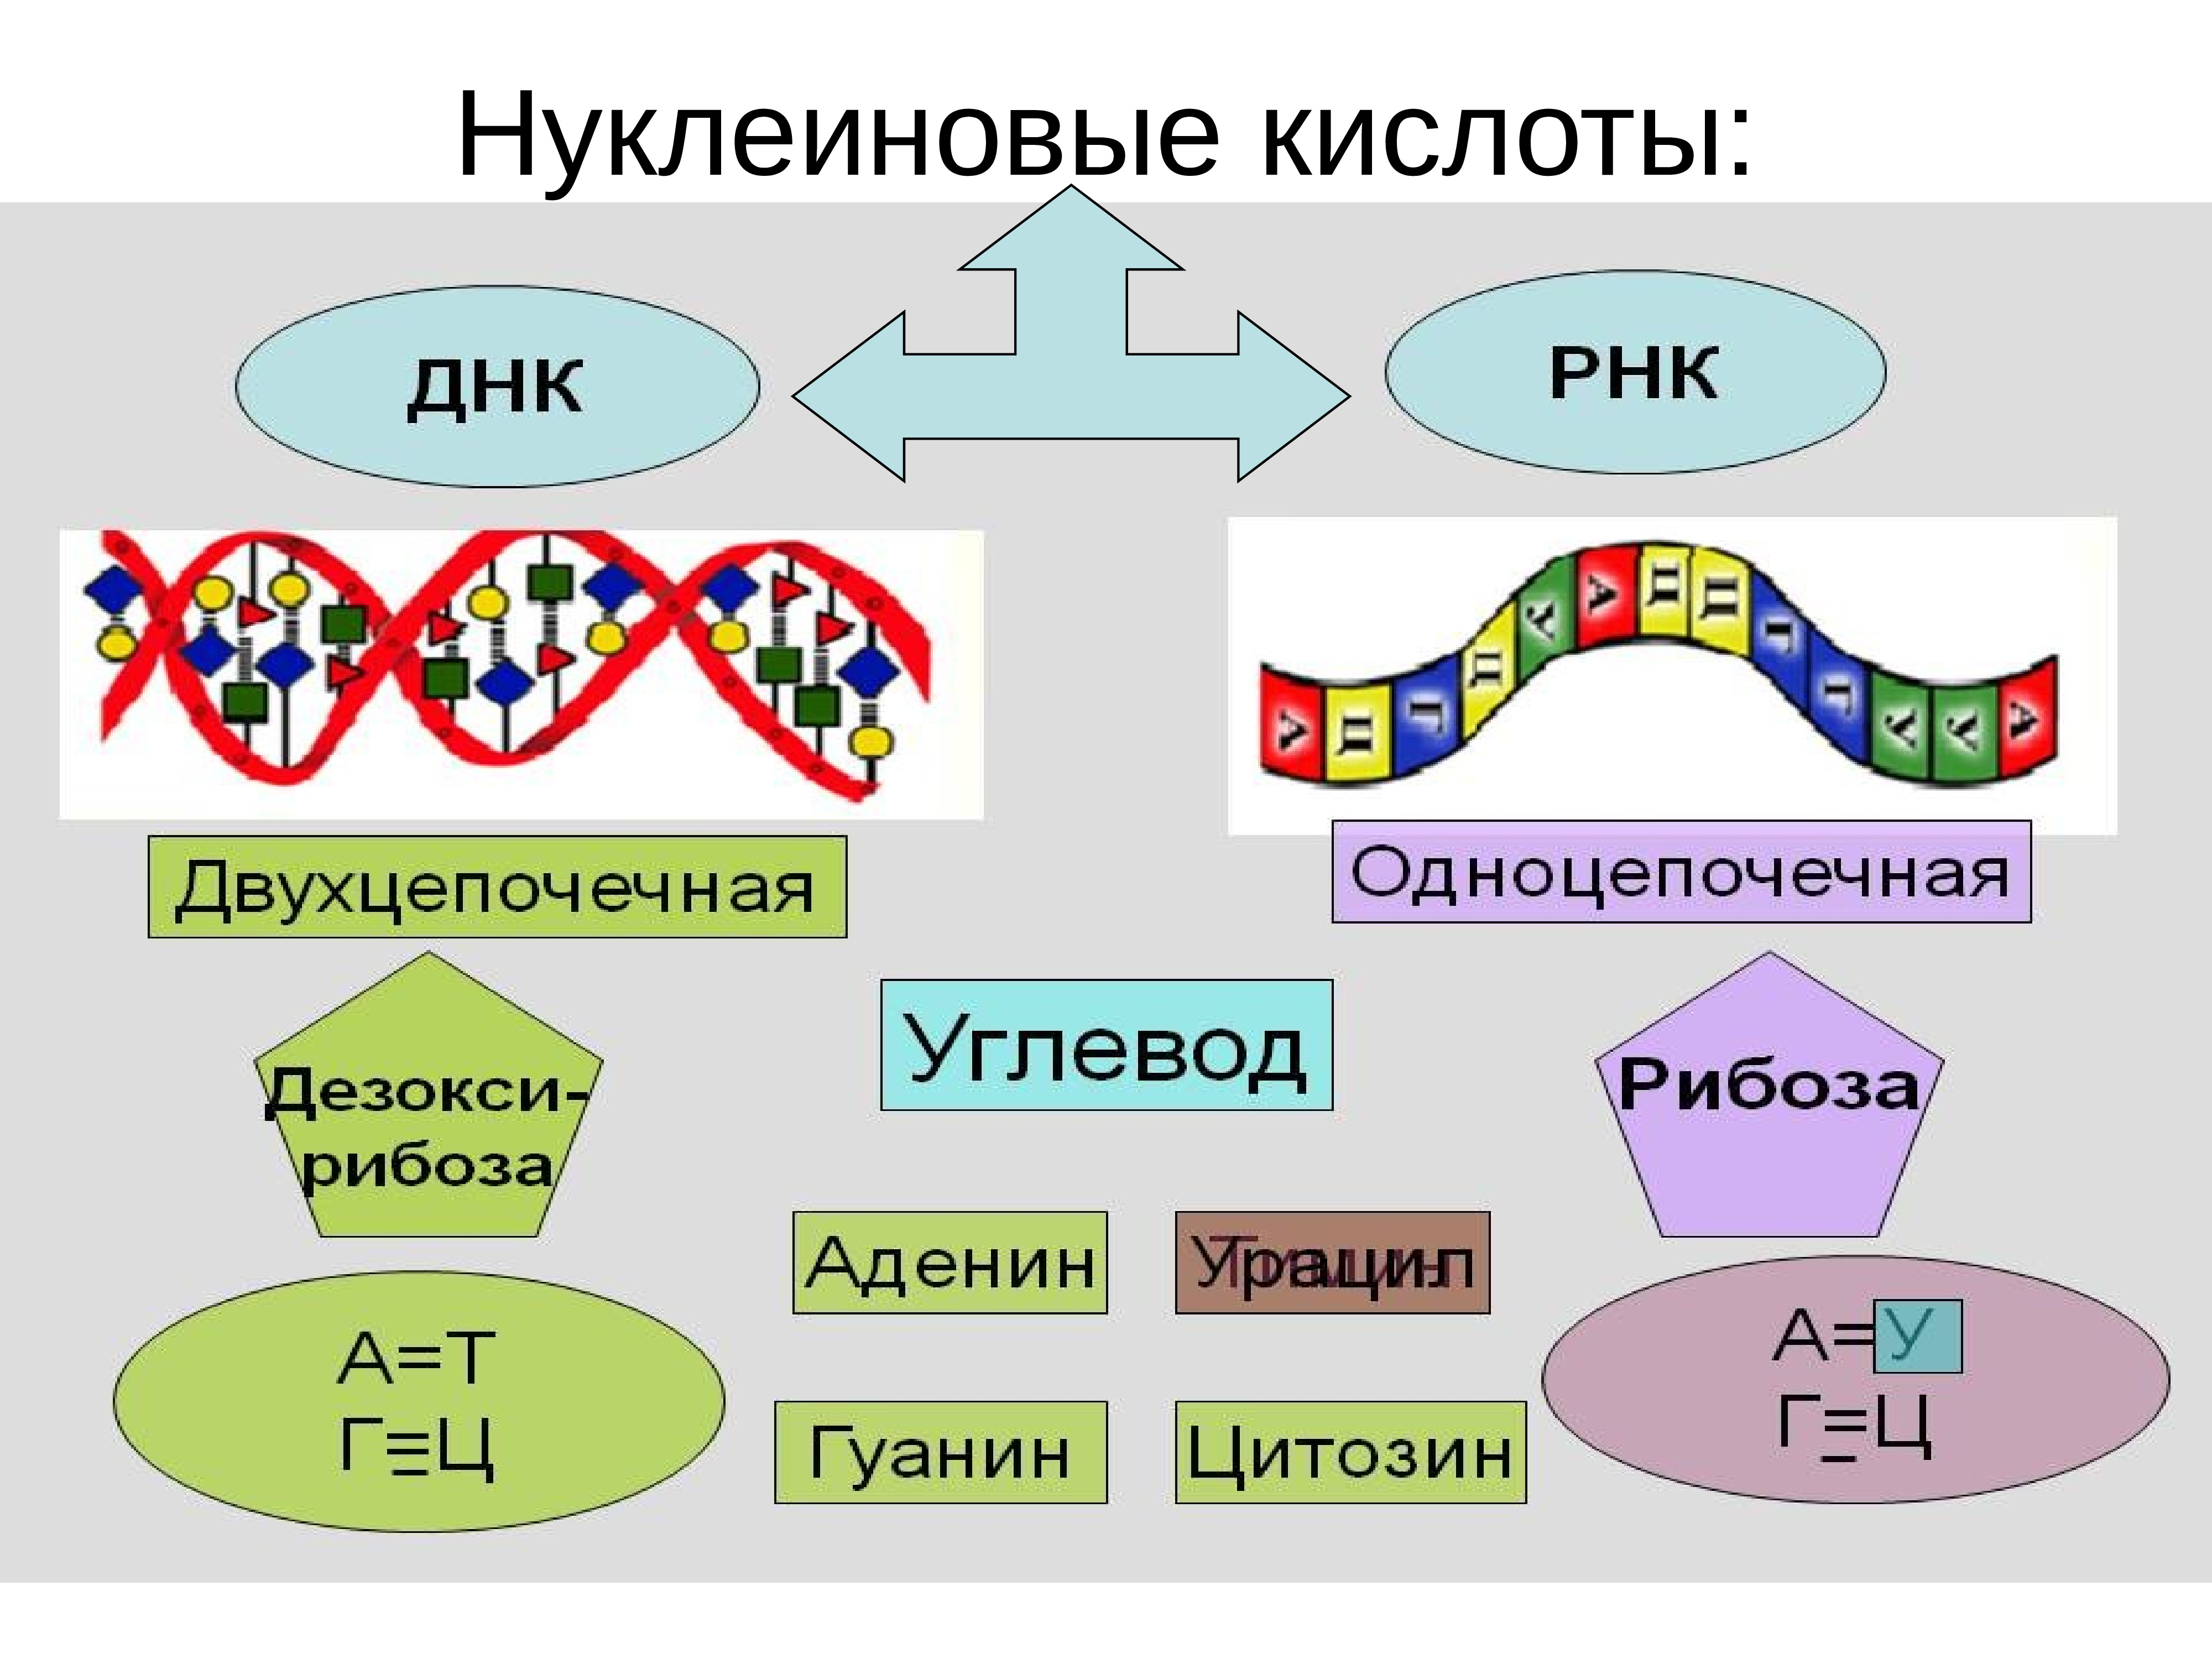 Основные нуклеиновые кислоты. Нуклеиновые кислоты ДНК И РНК. Строение нуклеиновых кислот ДНК И РНК. Строение нуклеиновые кислоты ДНК схема. Нуклеиновая кислота ИРНК.